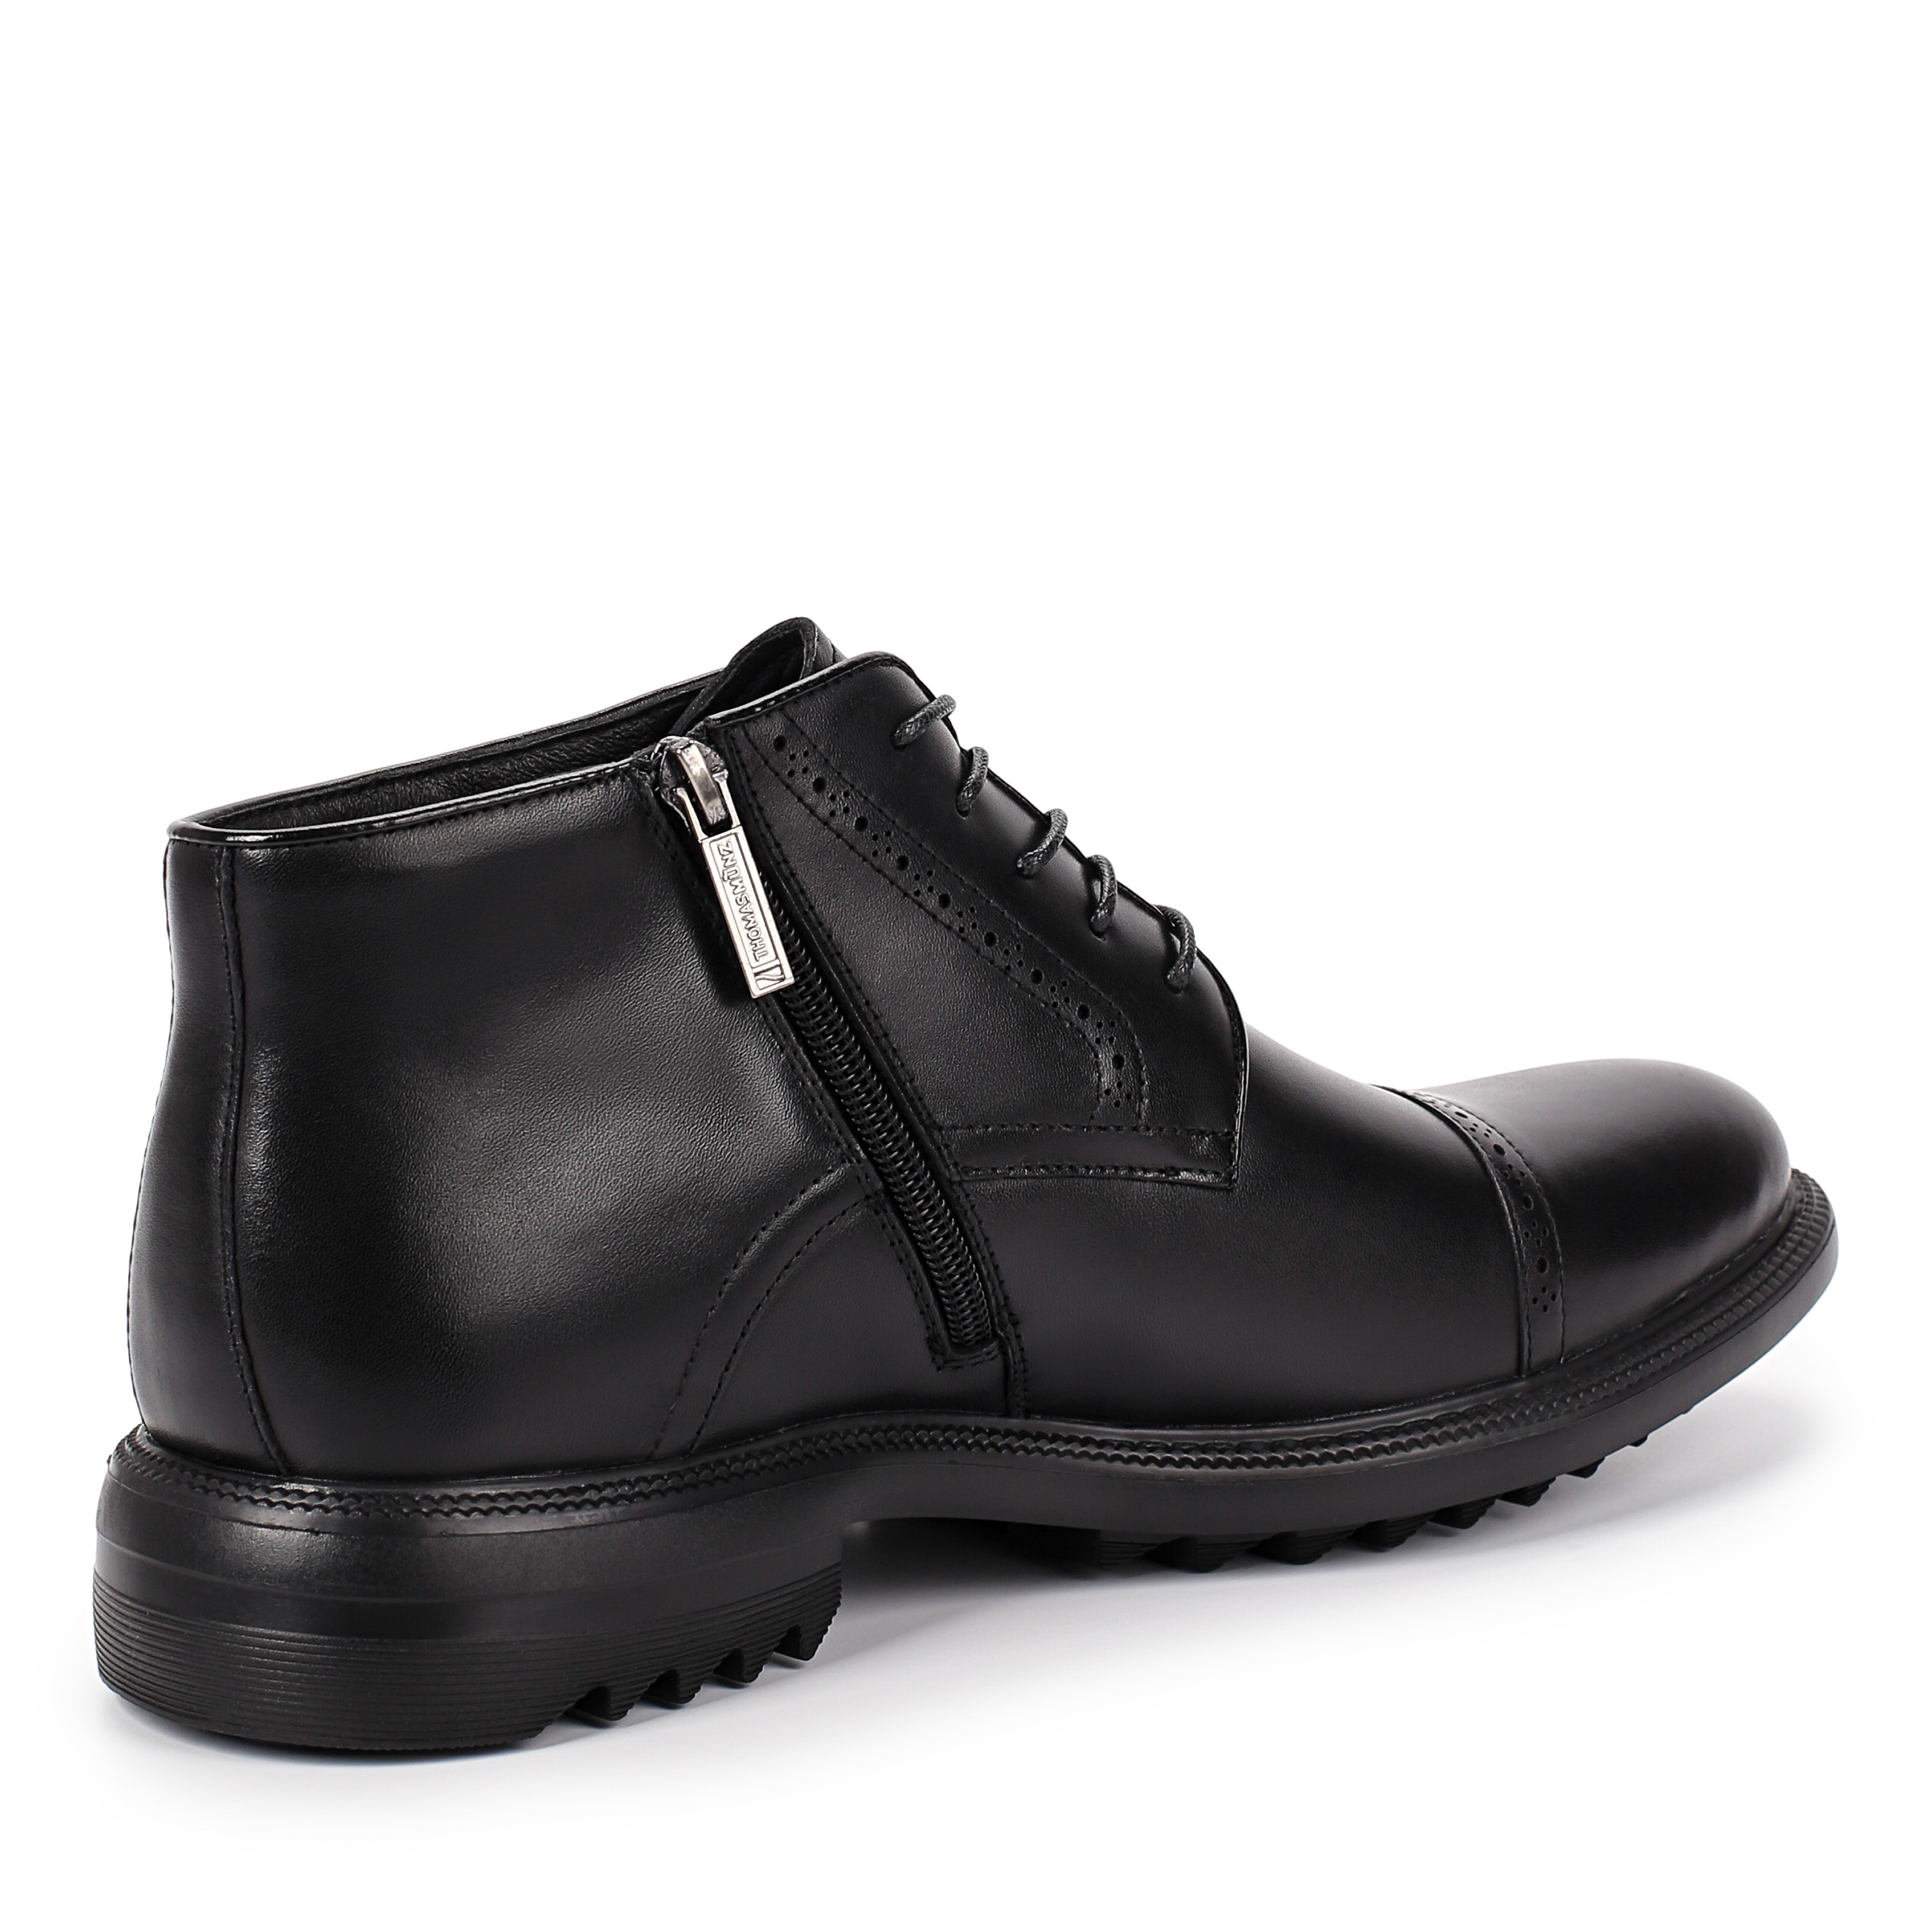 Ботинки Thomas Munz 073-383A-2102 073-383A-2102, цвет черный, размер 44 дерби - фото 3